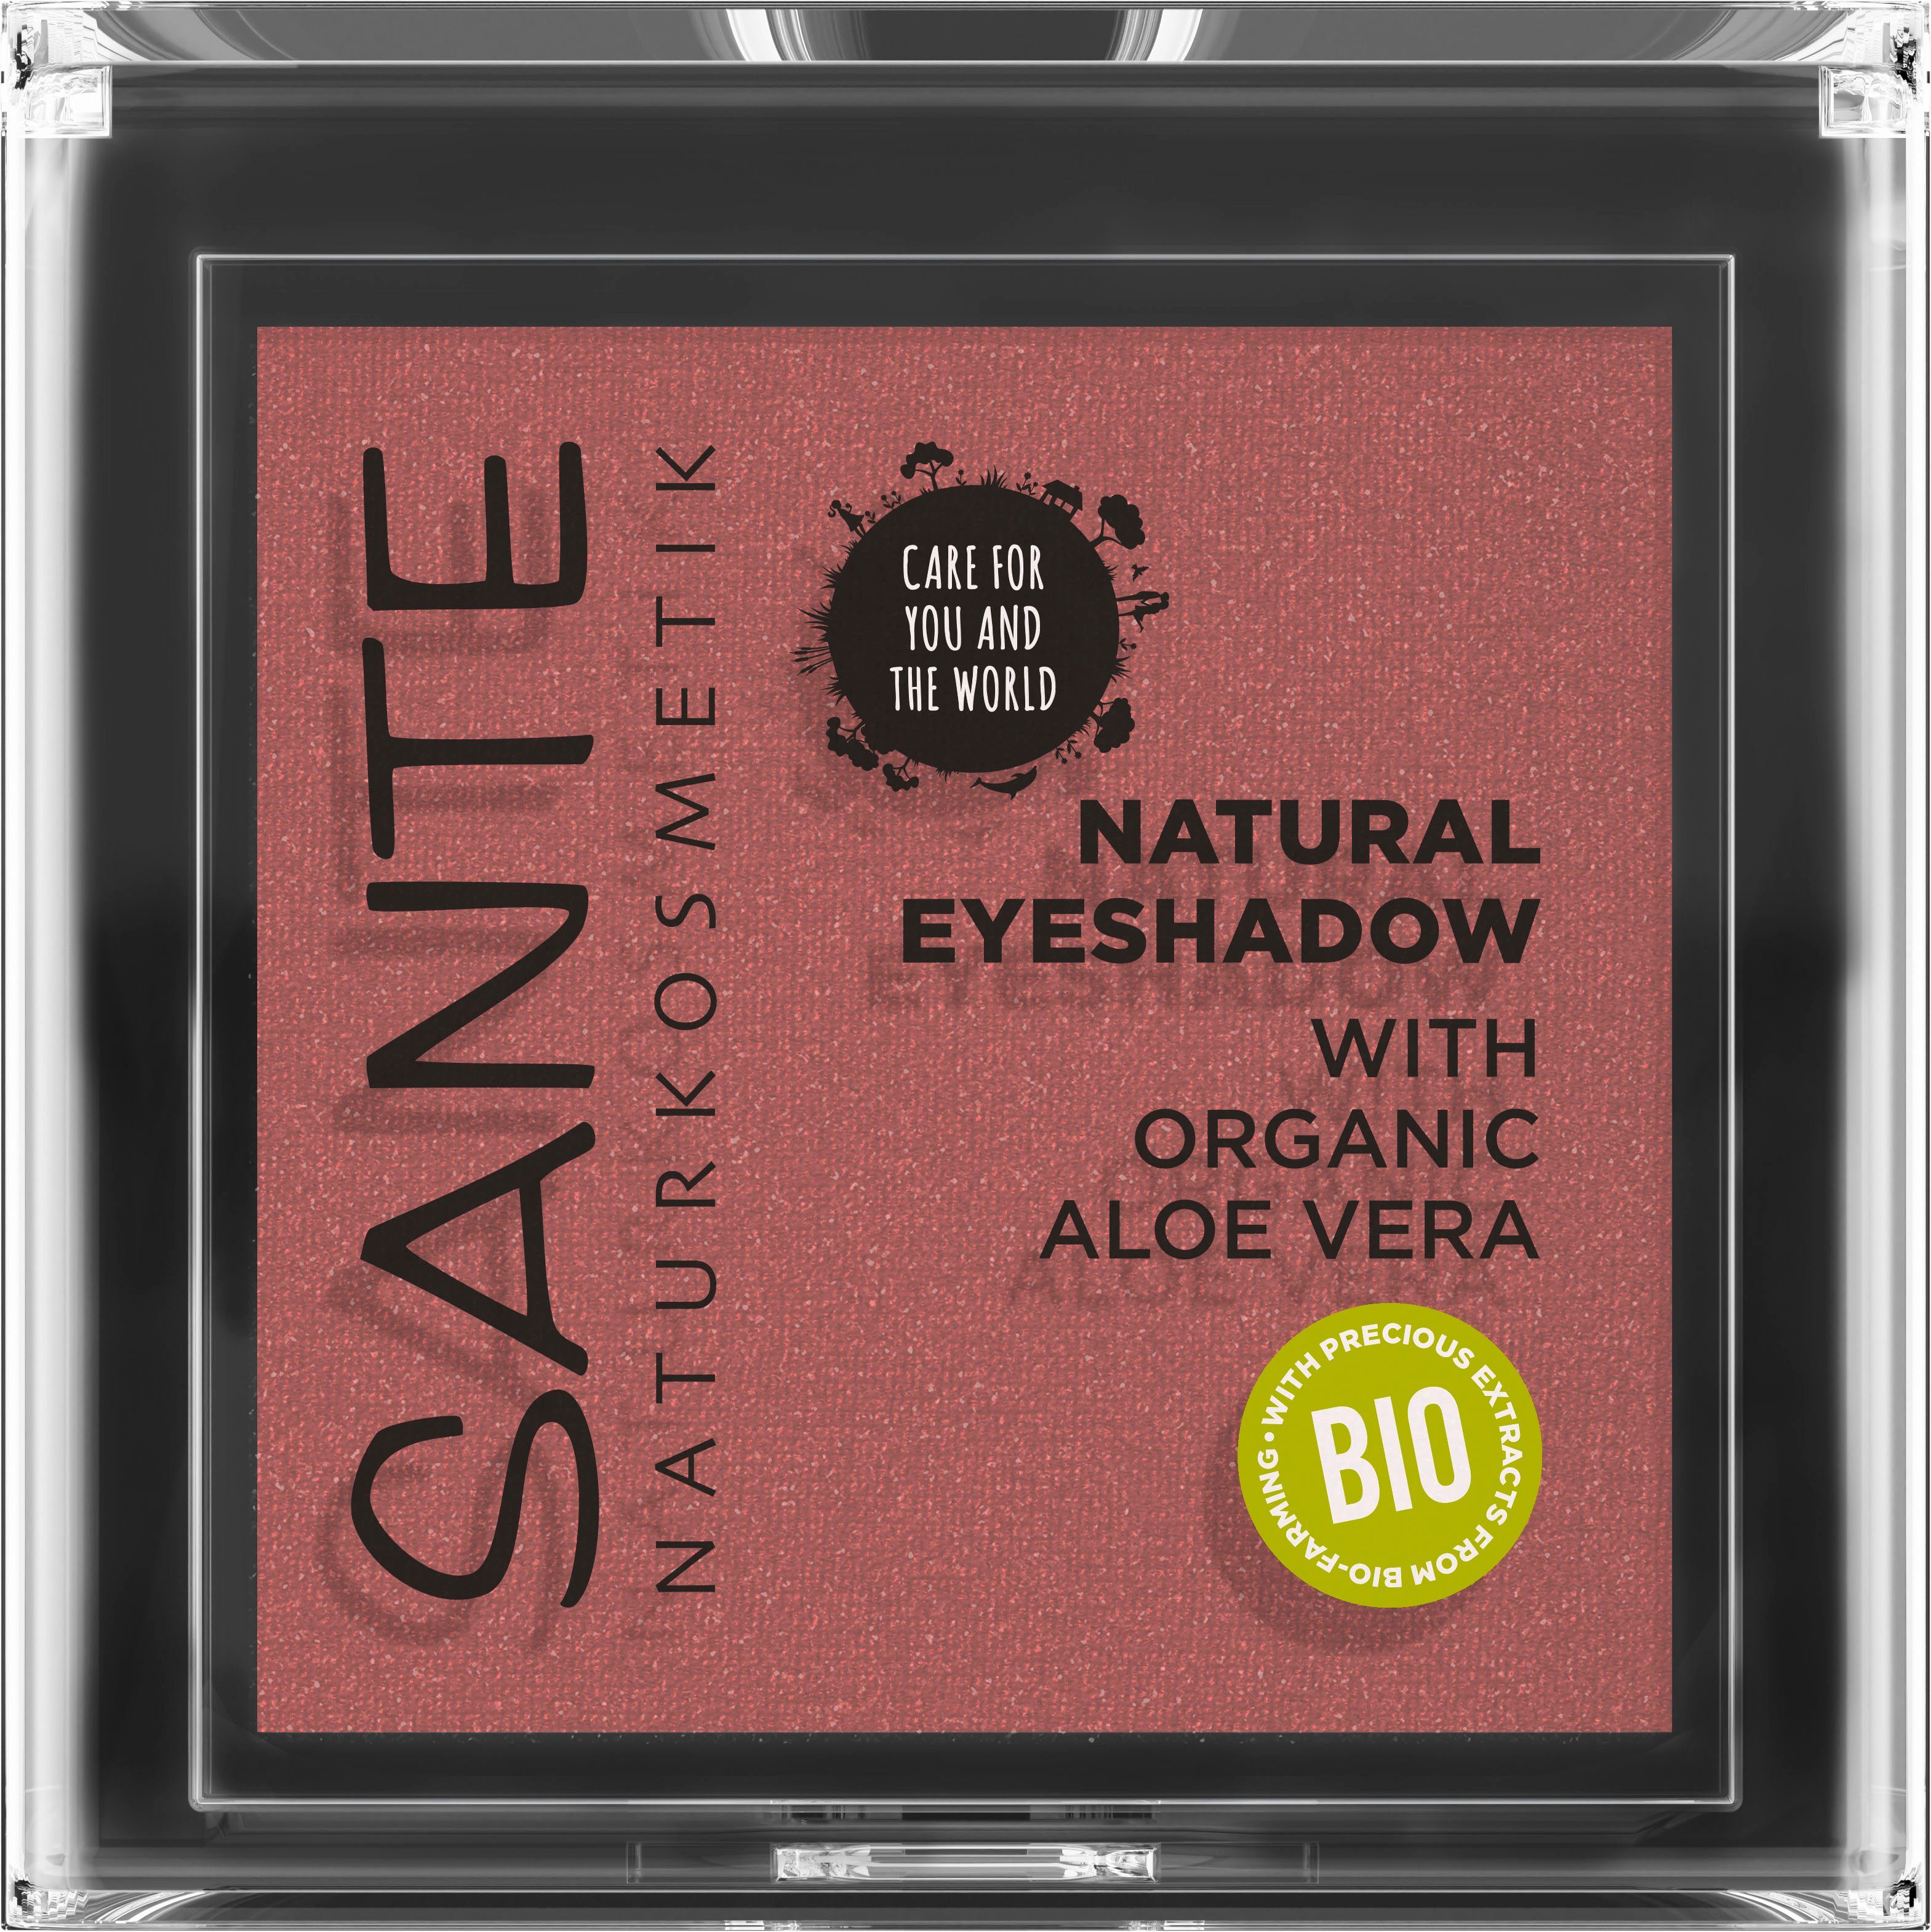 Natural SANTE Sunburst Lidschatten Eyeshadow 02 Copper